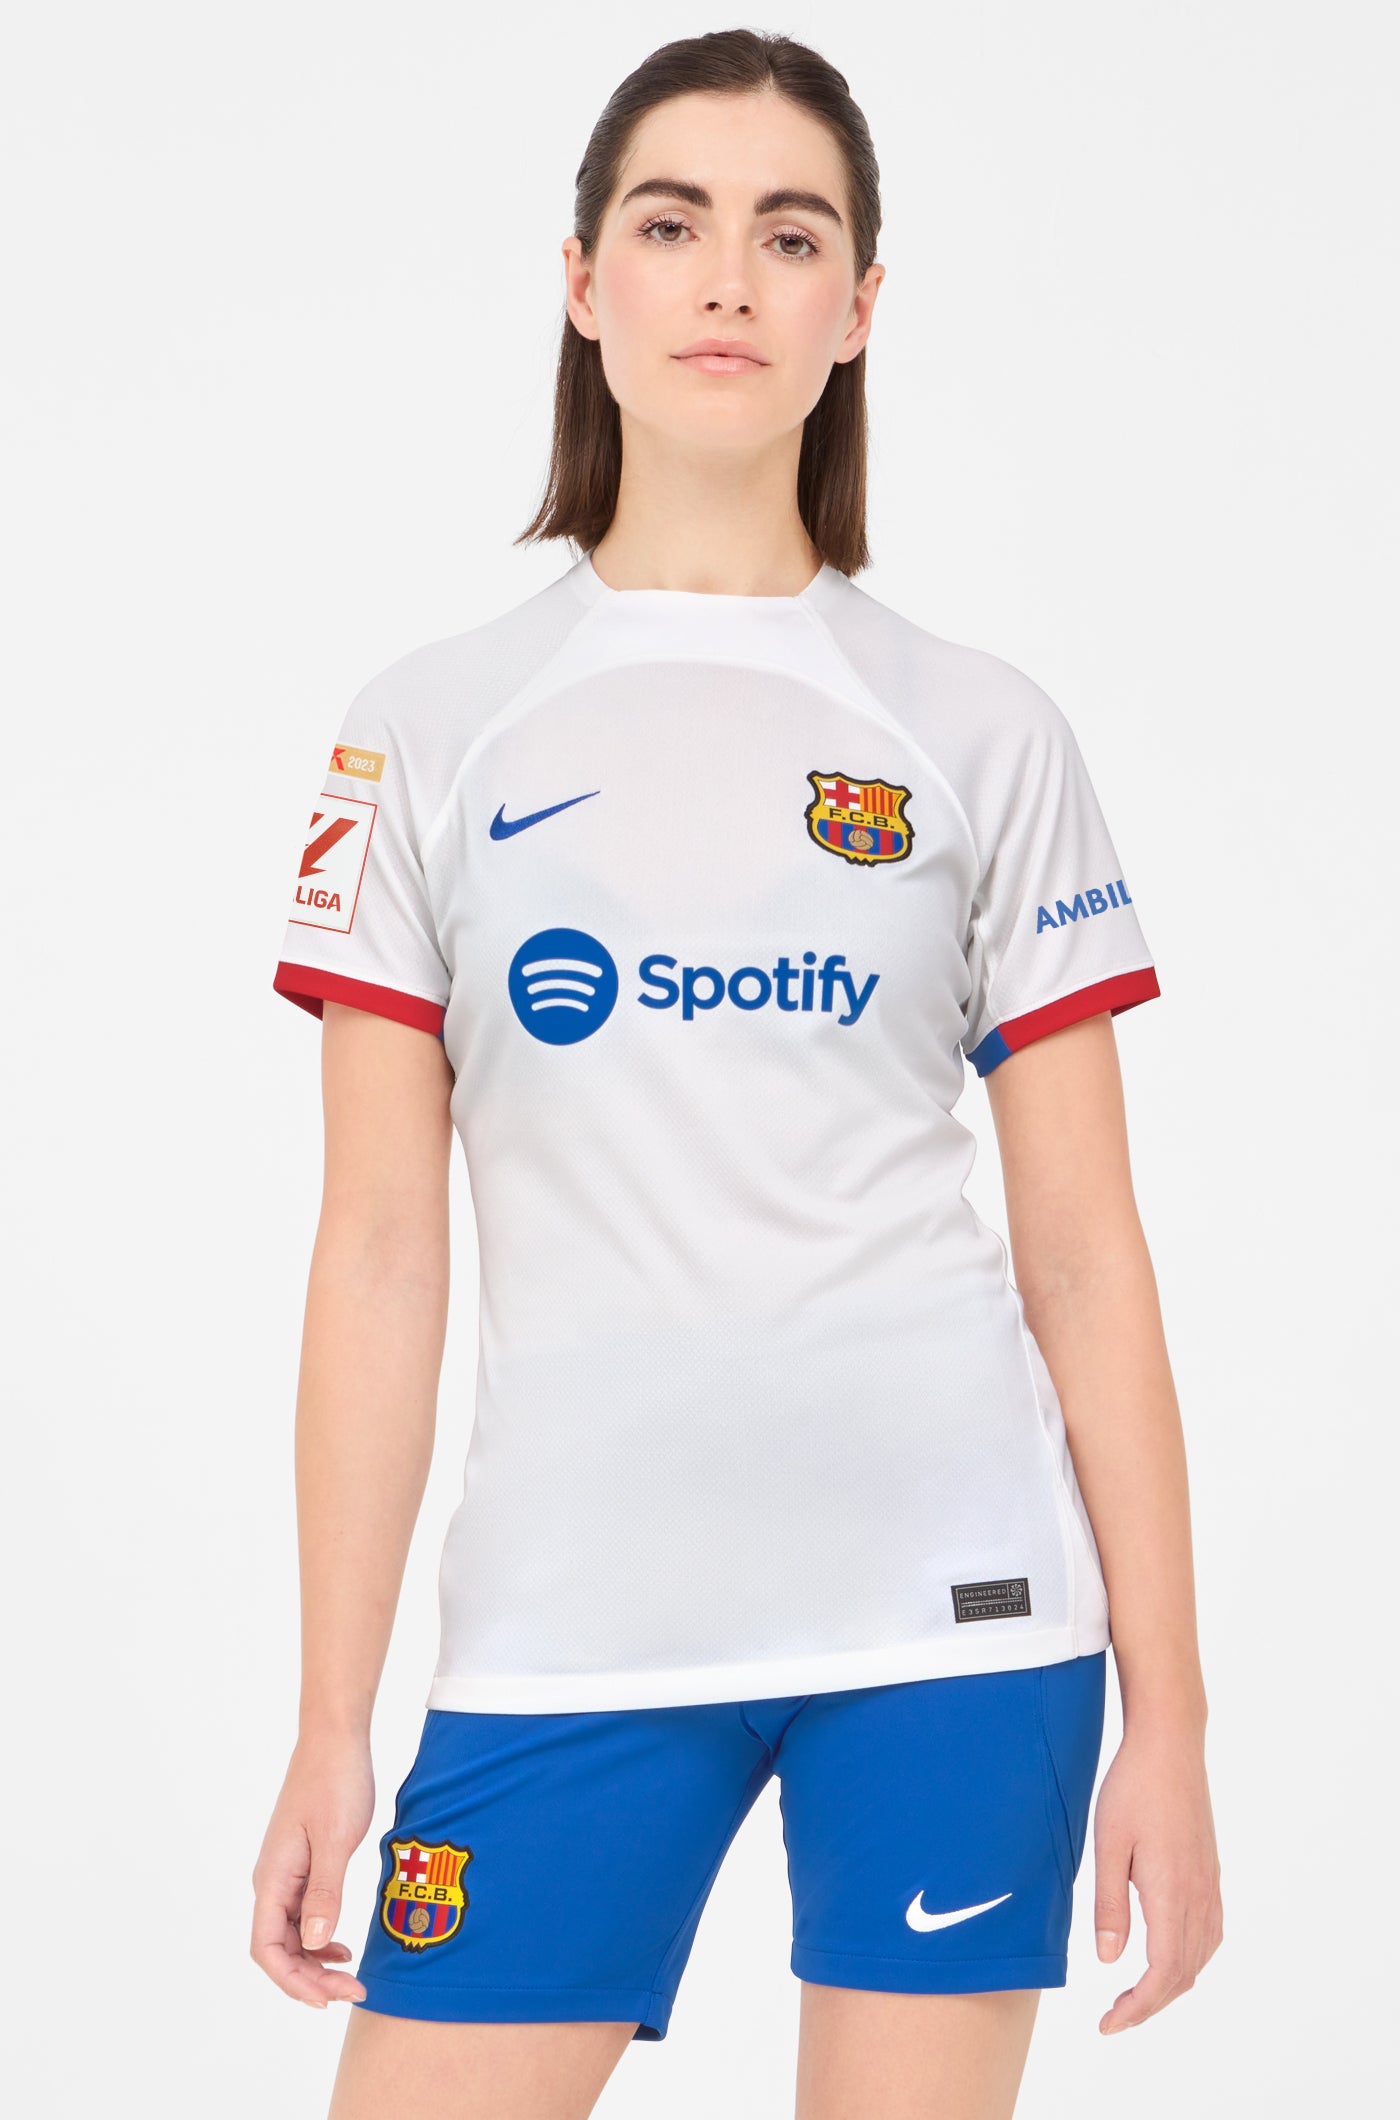 LFP FC Barcelona away shirt 23/24 - Women - RAPHINHA